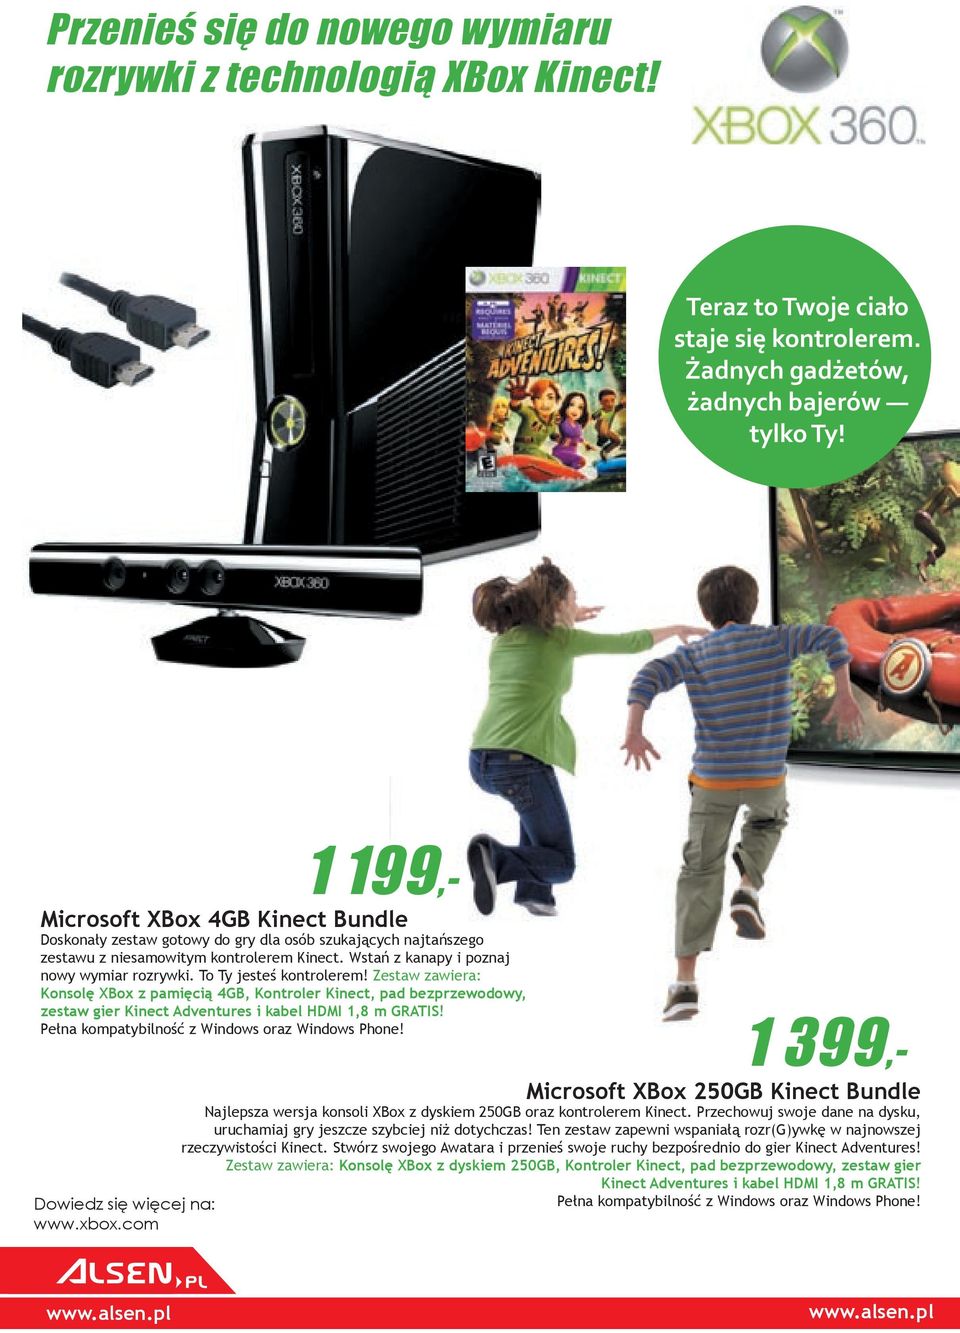 To Ty jesteś kontrolerem! Zestaw zawiera: Konsolę XBox z pamięcią 4GB, Kontroler Kinect, pad bezprzewodowy, zestaw gier Kinect Adventures i kabel HDMI 1,8 m GRATIS!